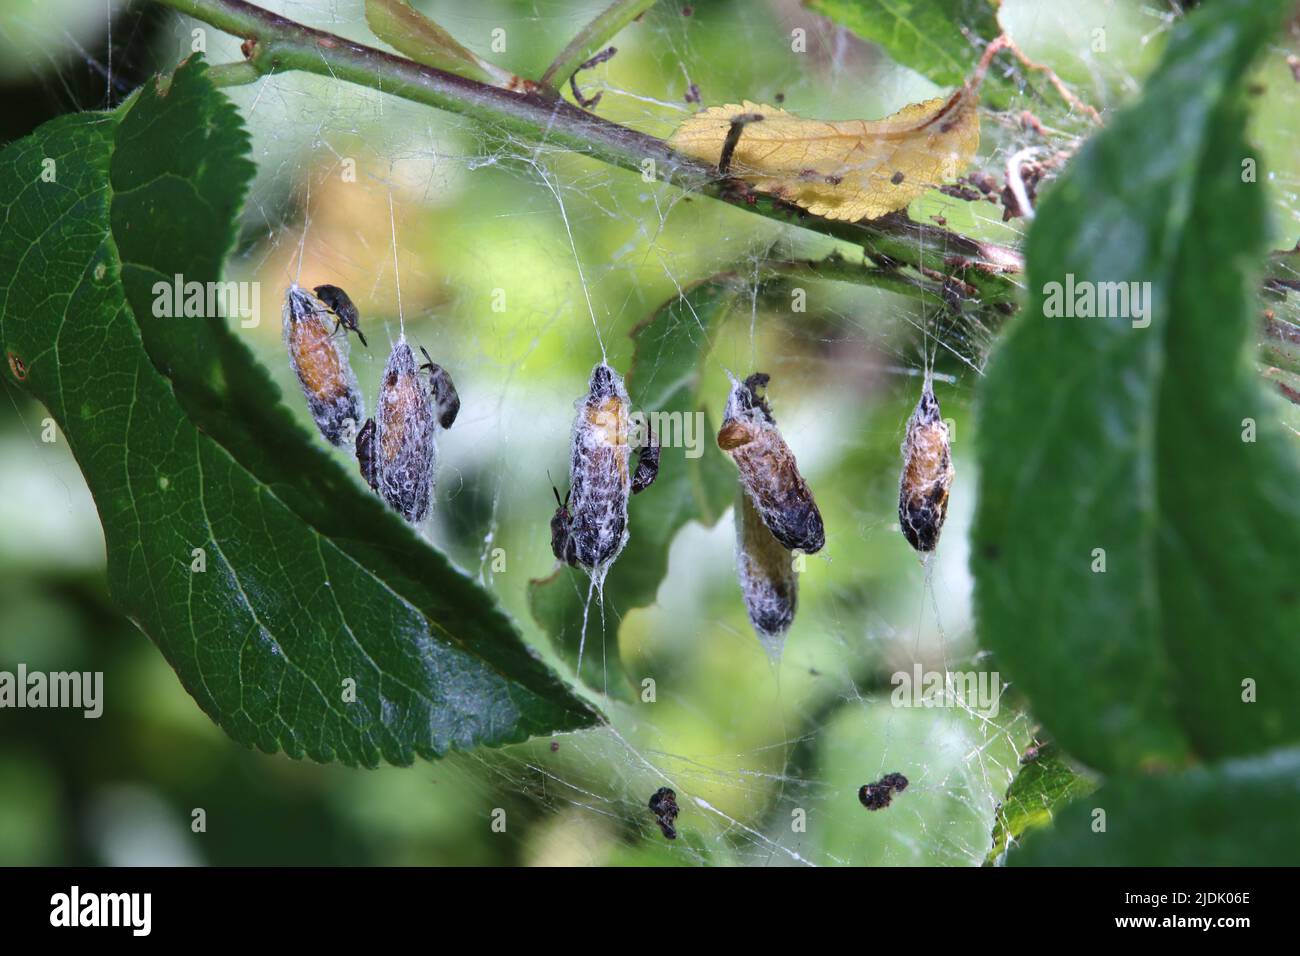 Puppen der Pflaumen-Gespinstmotte (Yponomeuta padella), auf denen sich räuberische Weichwanzen (Atractotomus mali) befinden Foto Stock